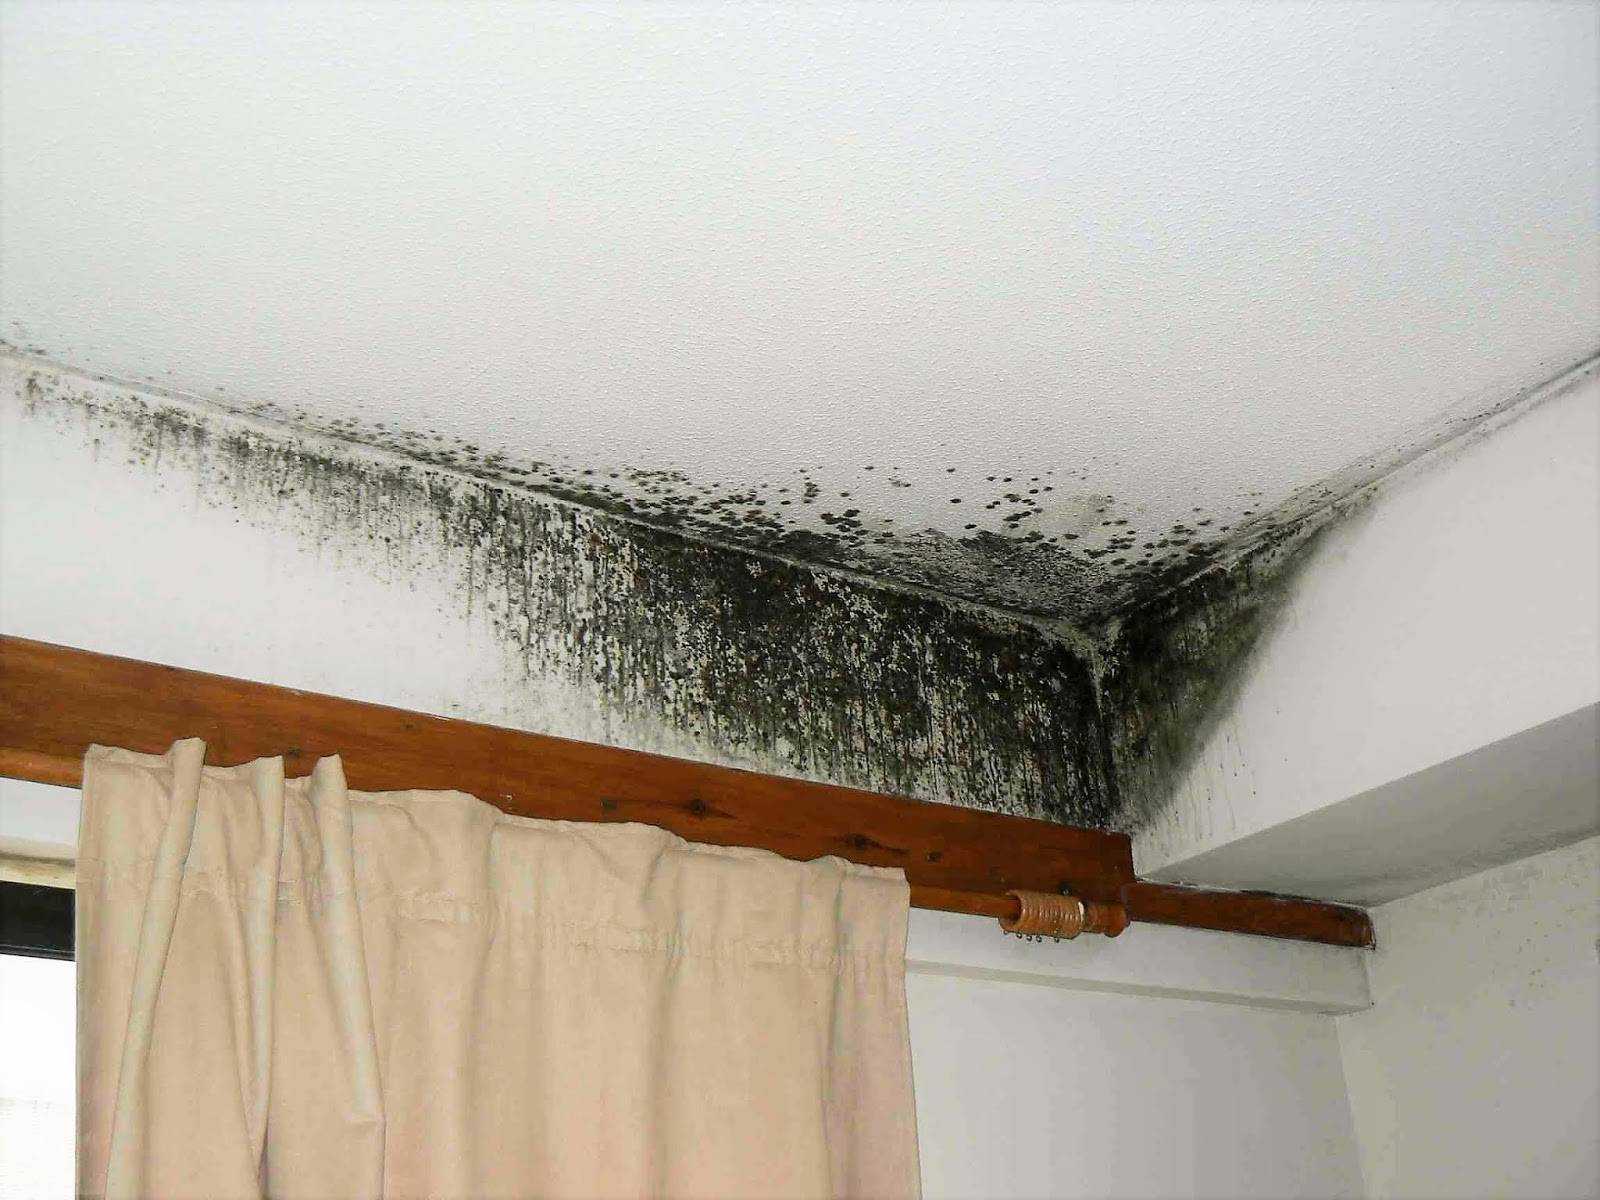 Грибок на потолке в ванной как избавиться: плесень и как с ней бороться в квартире, как убрать если покрылся, обработка в комнате и удаление медным купоросом